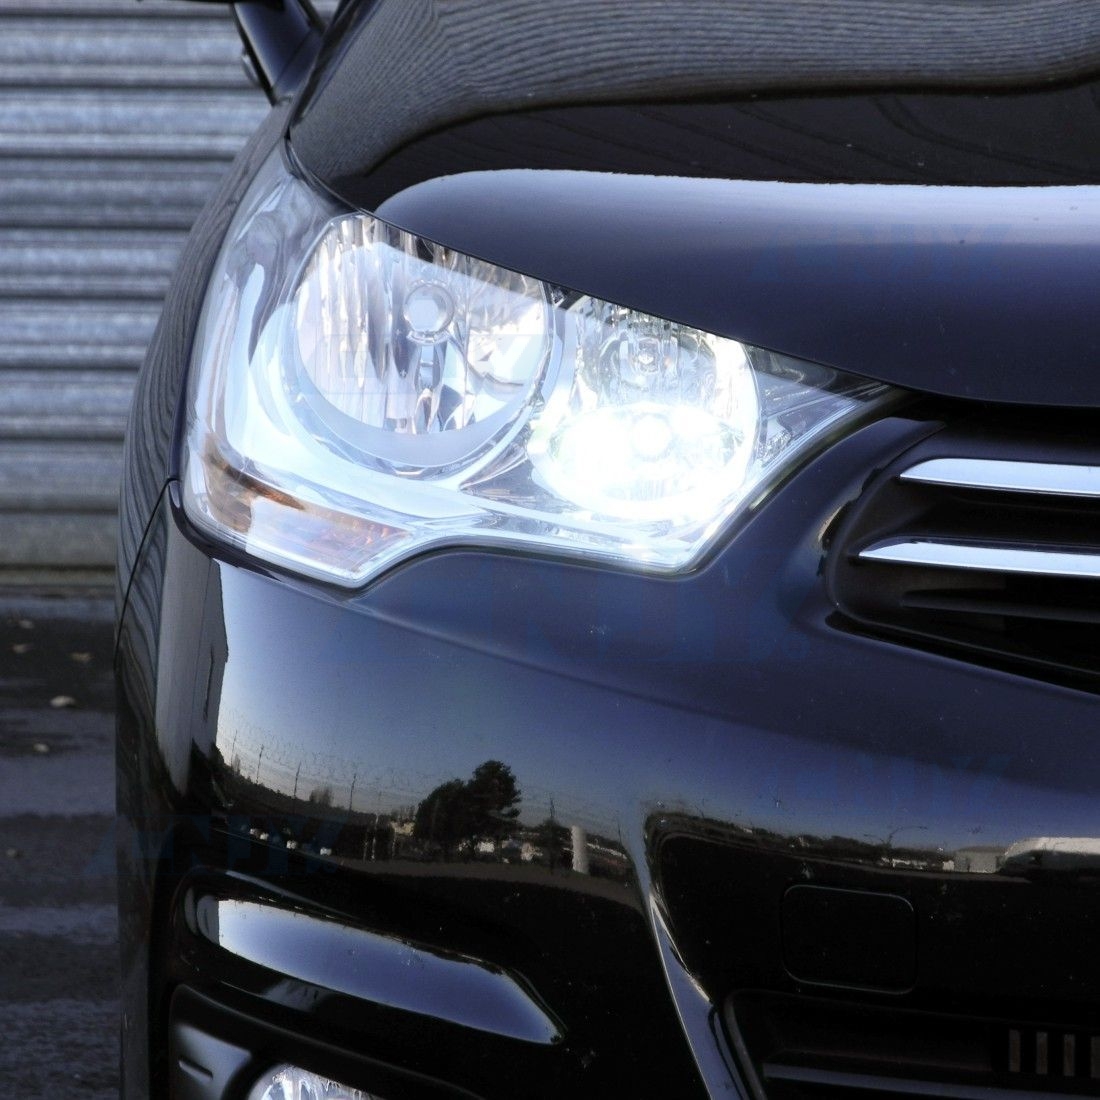 Pour Peugeot 3008 Ampoules LED Blanc Veilleuses Feux diurne Jour sans Feux  xenon